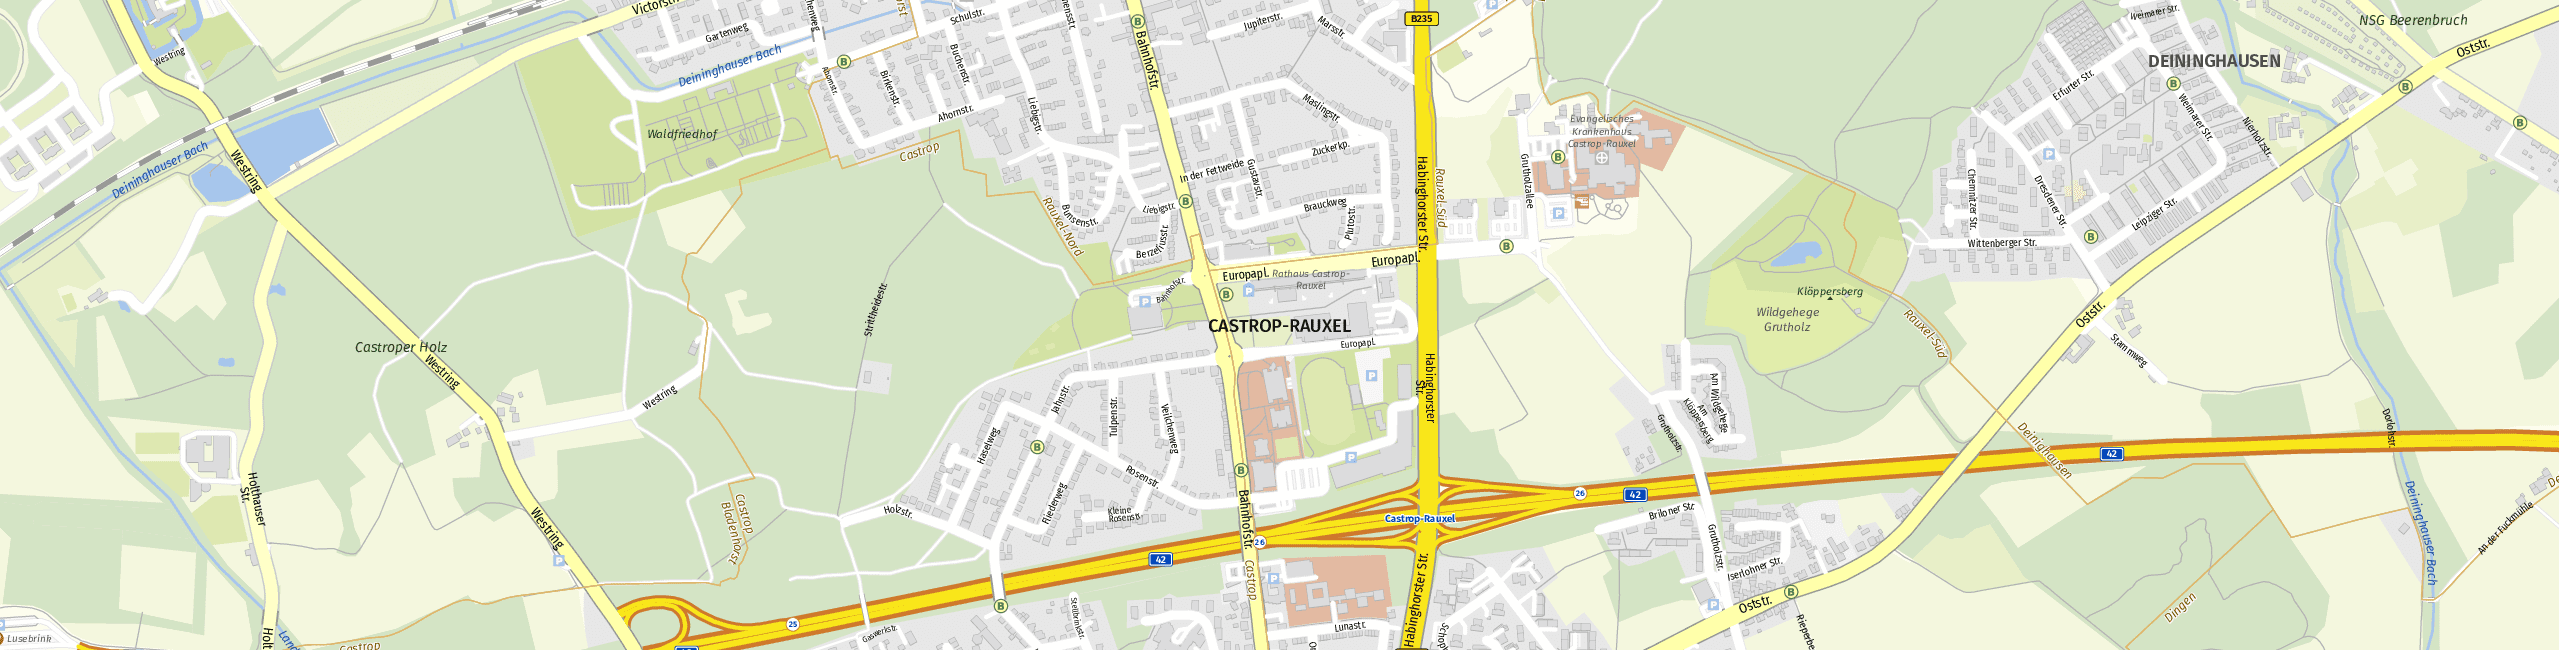 Stadtplan Castrop-Rauxel zum Downloaden.